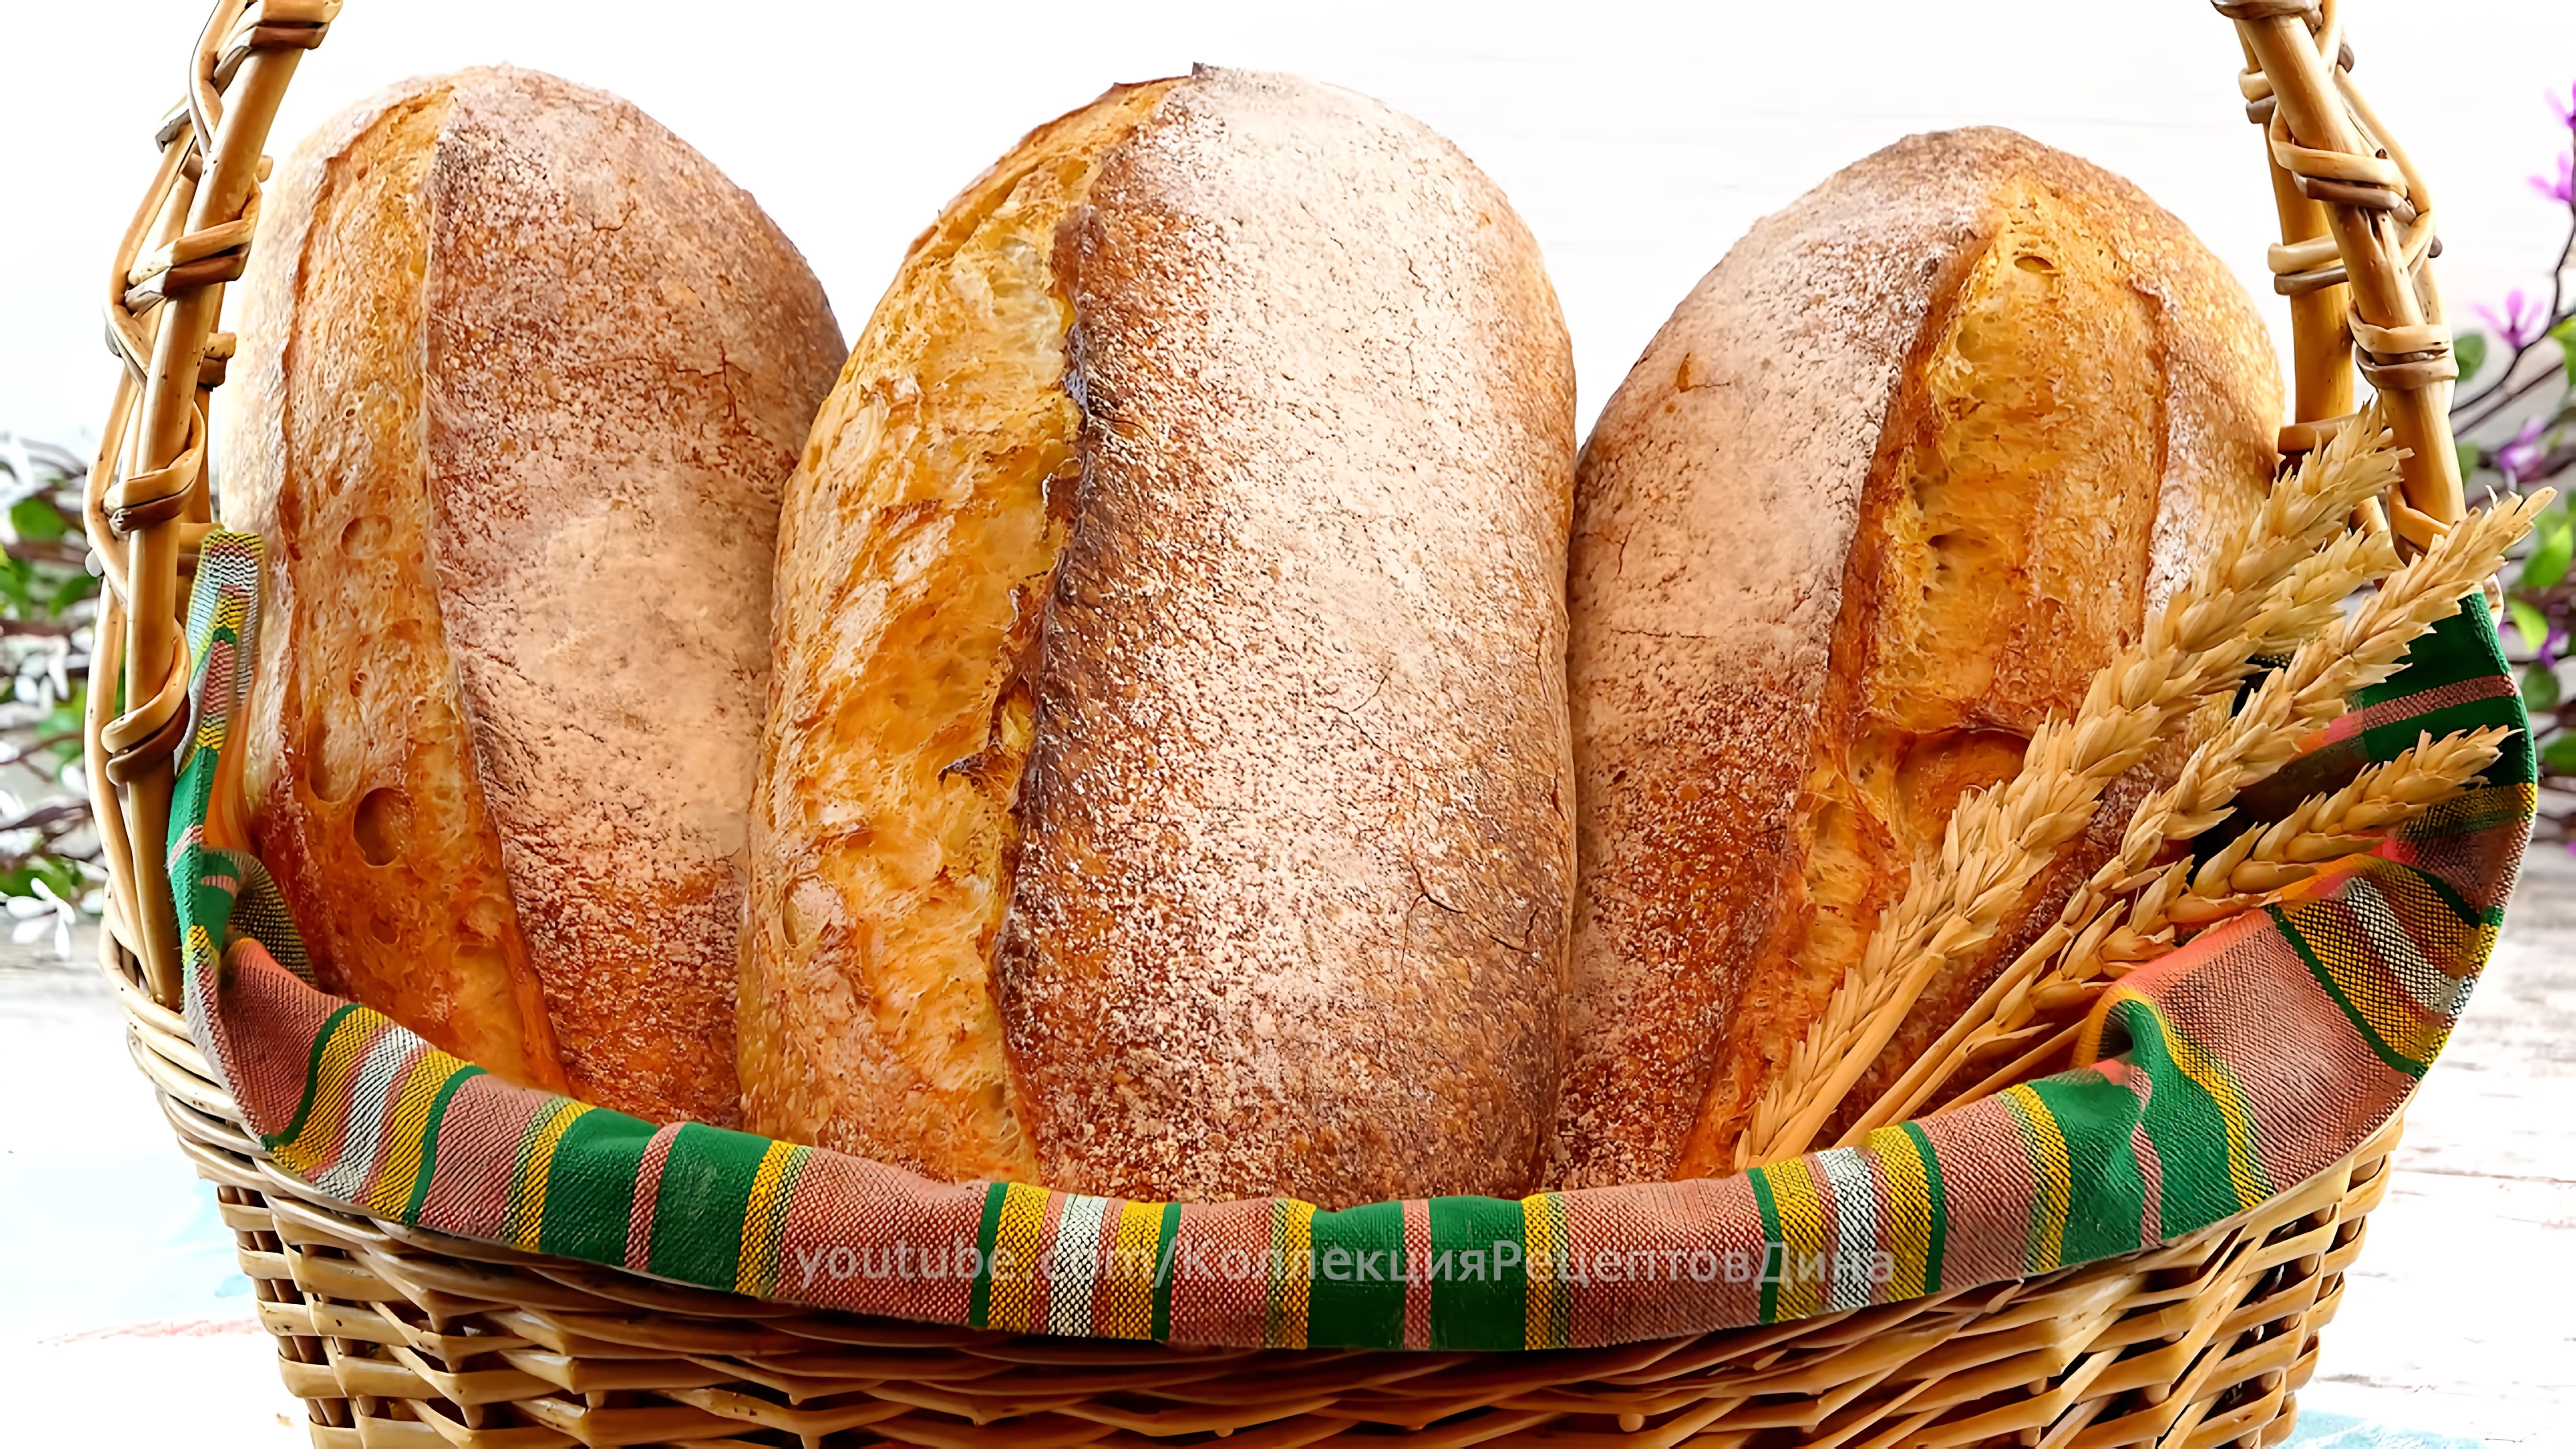 Видео: Вермонтский хлеб с цельнозерновой пшеничной мукой на ржаной закваске!